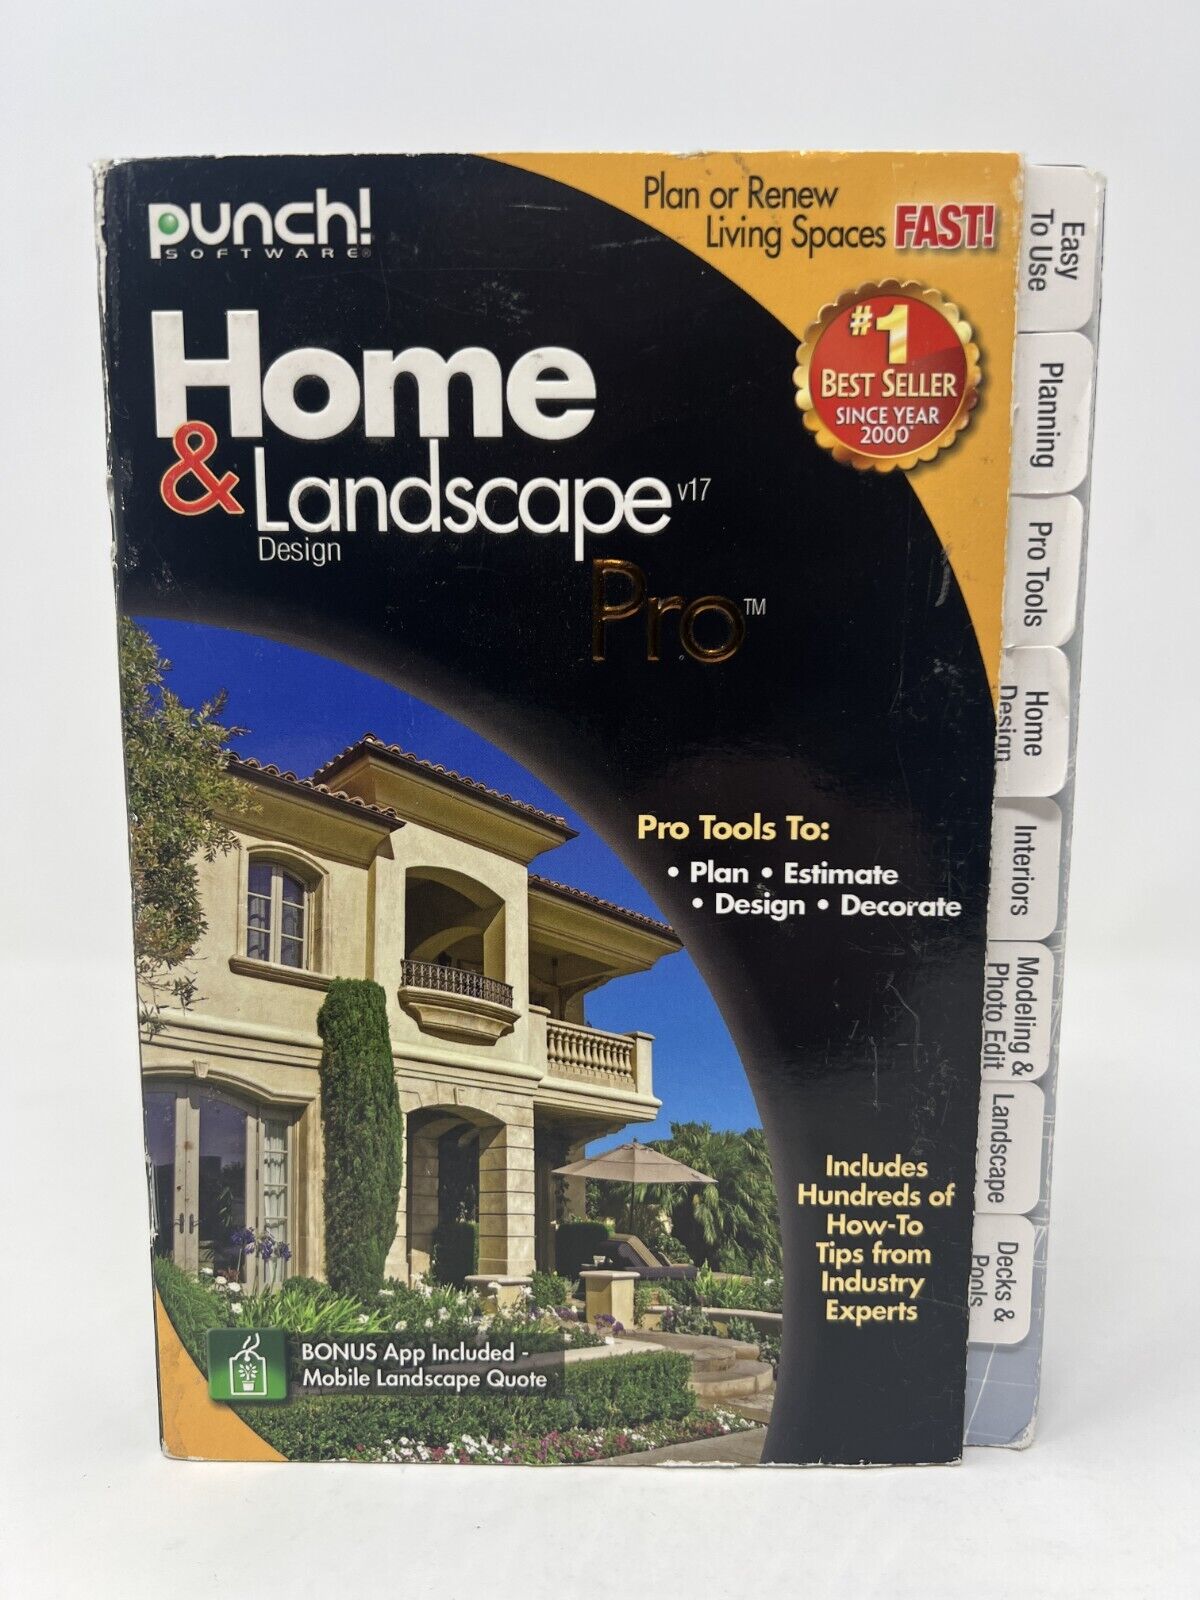 Home & Landscape Design Premium Version-Punch- New(Factory Sealed) 2011 V17